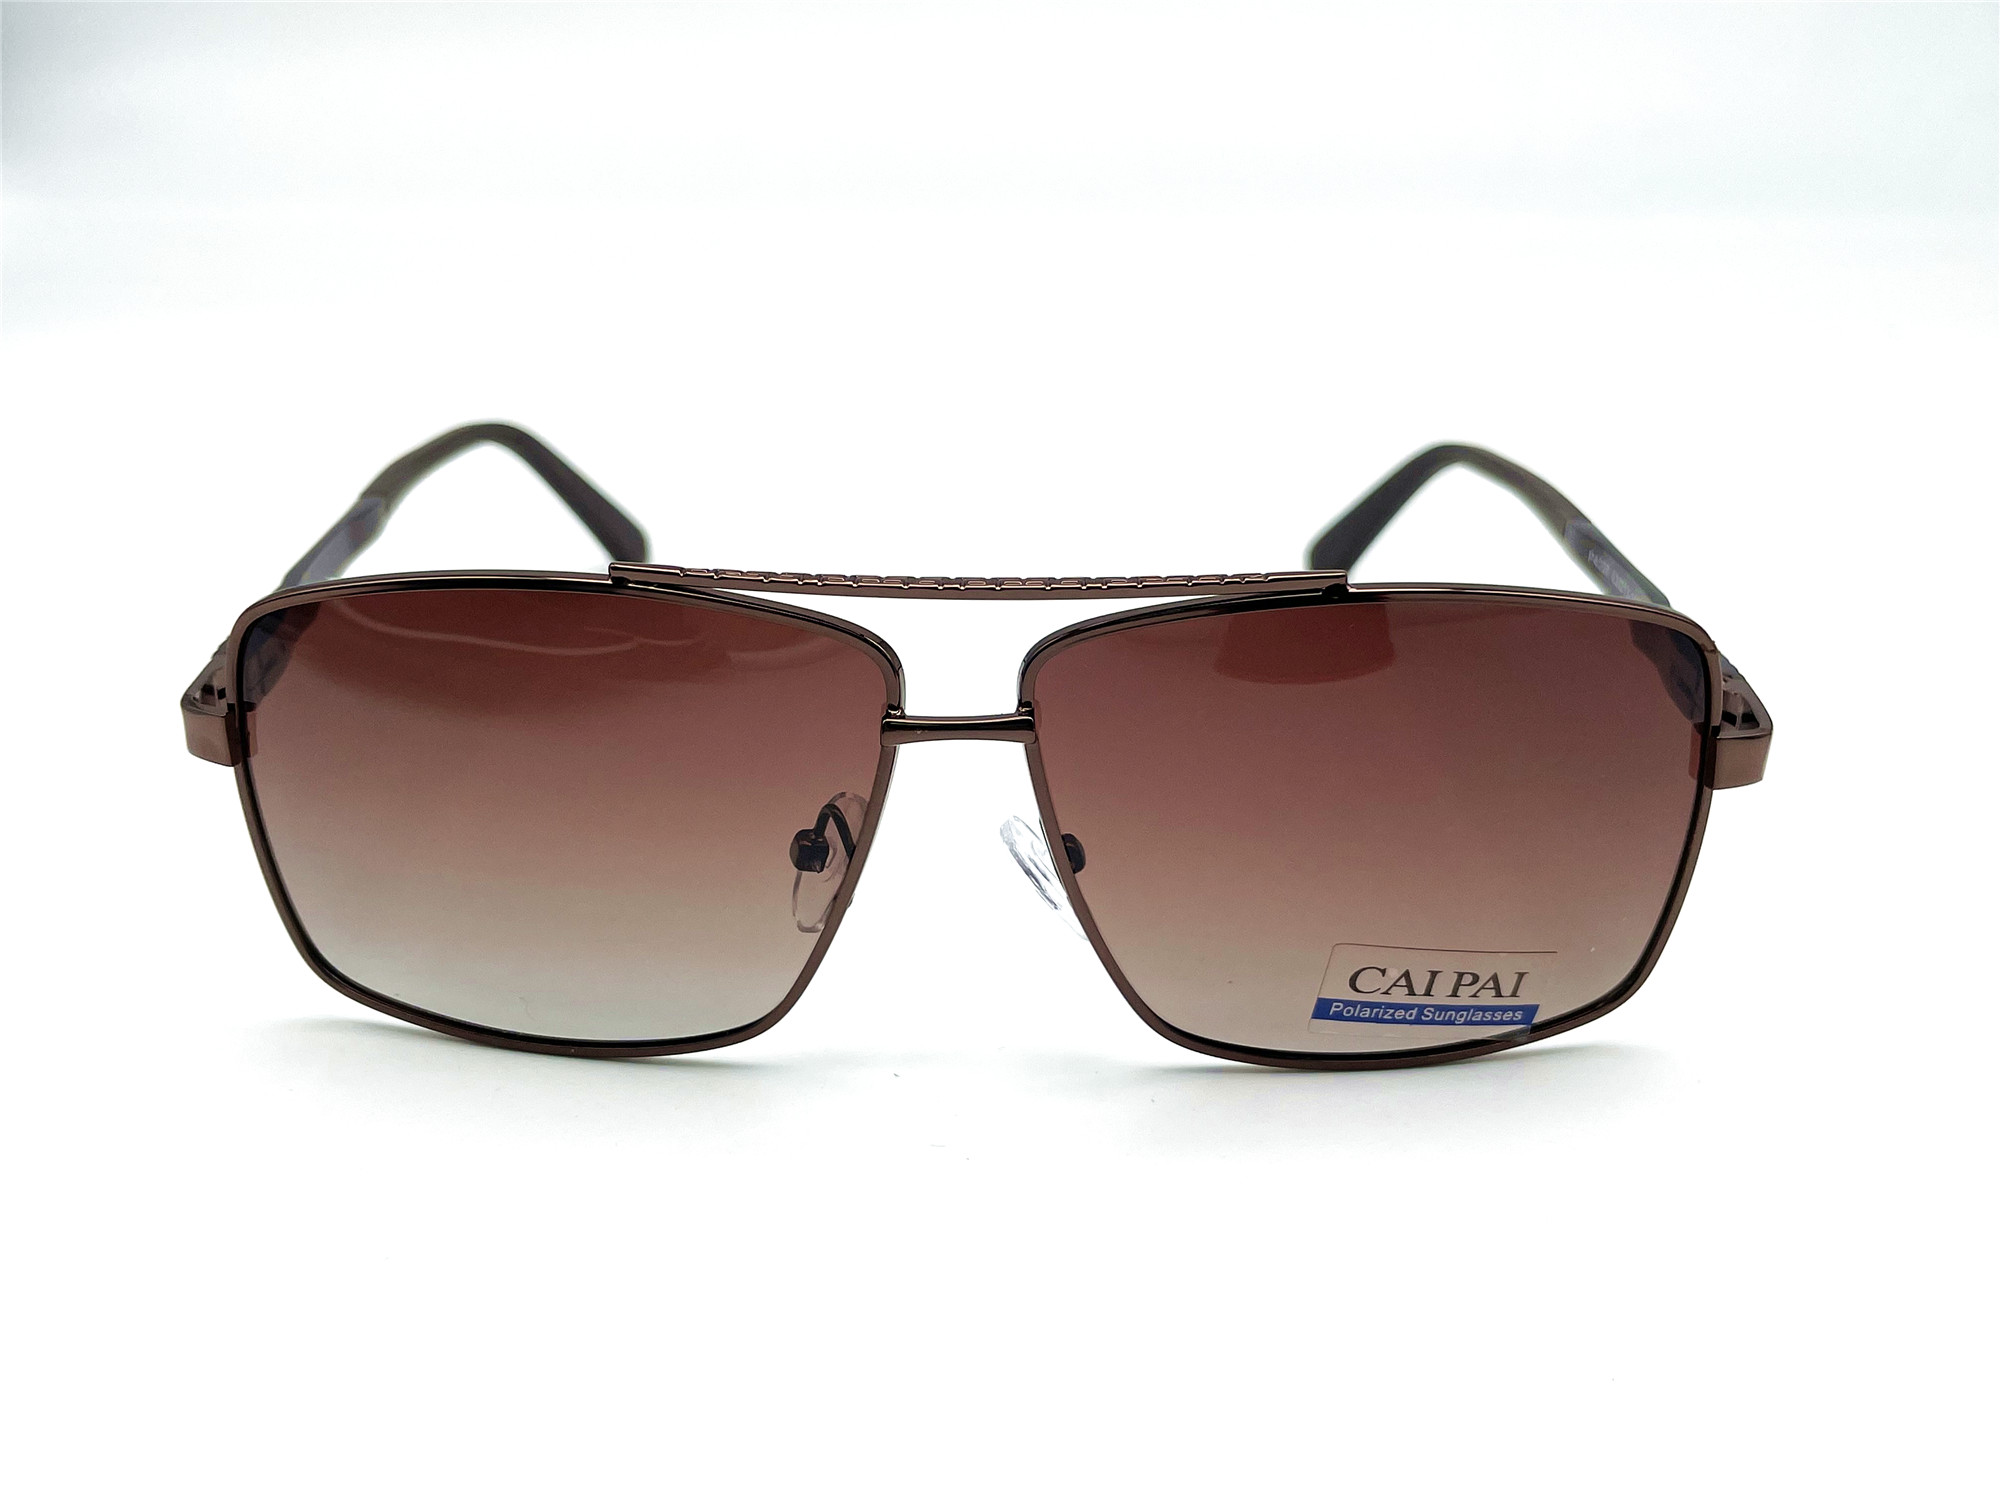  Солнцезащитные очки картинка Мужские Caipai Polarized Квадратные P4008-С3 